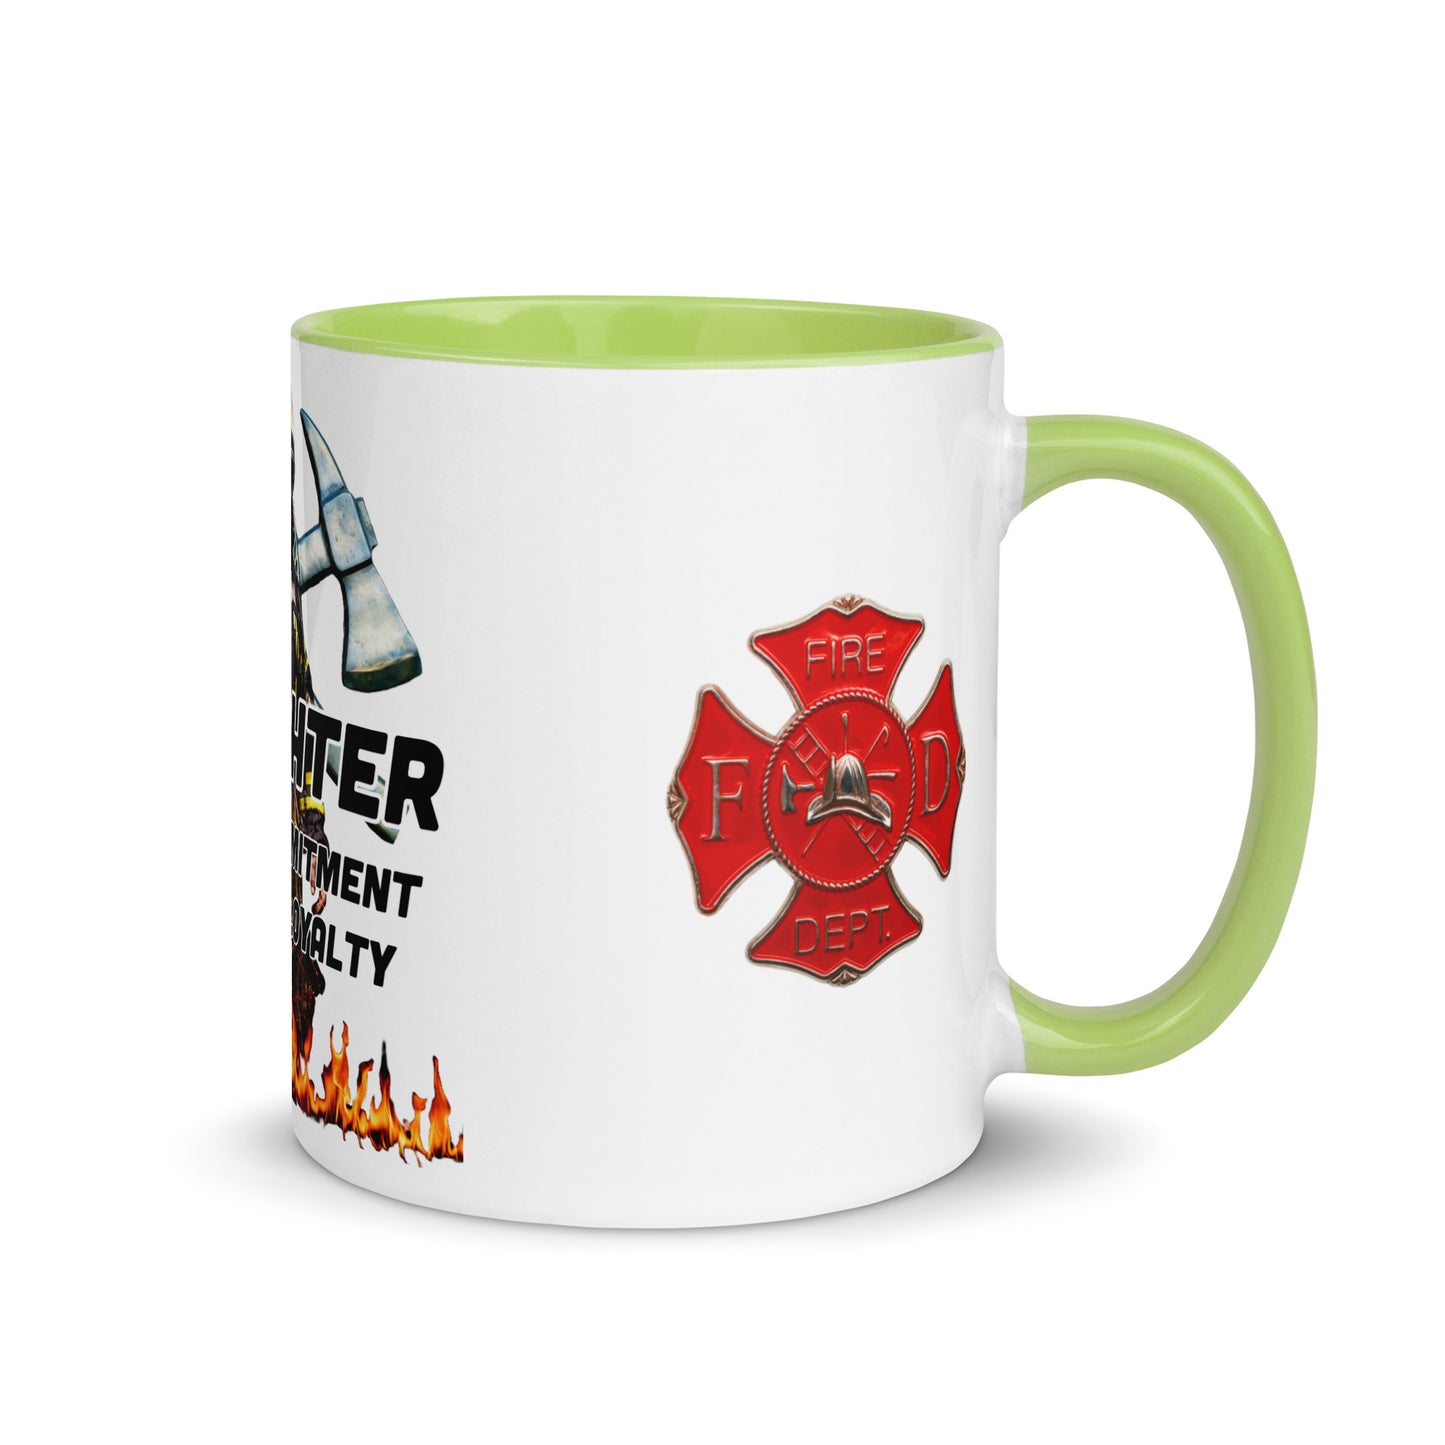 Firefighter 954 Mug with Color Inside